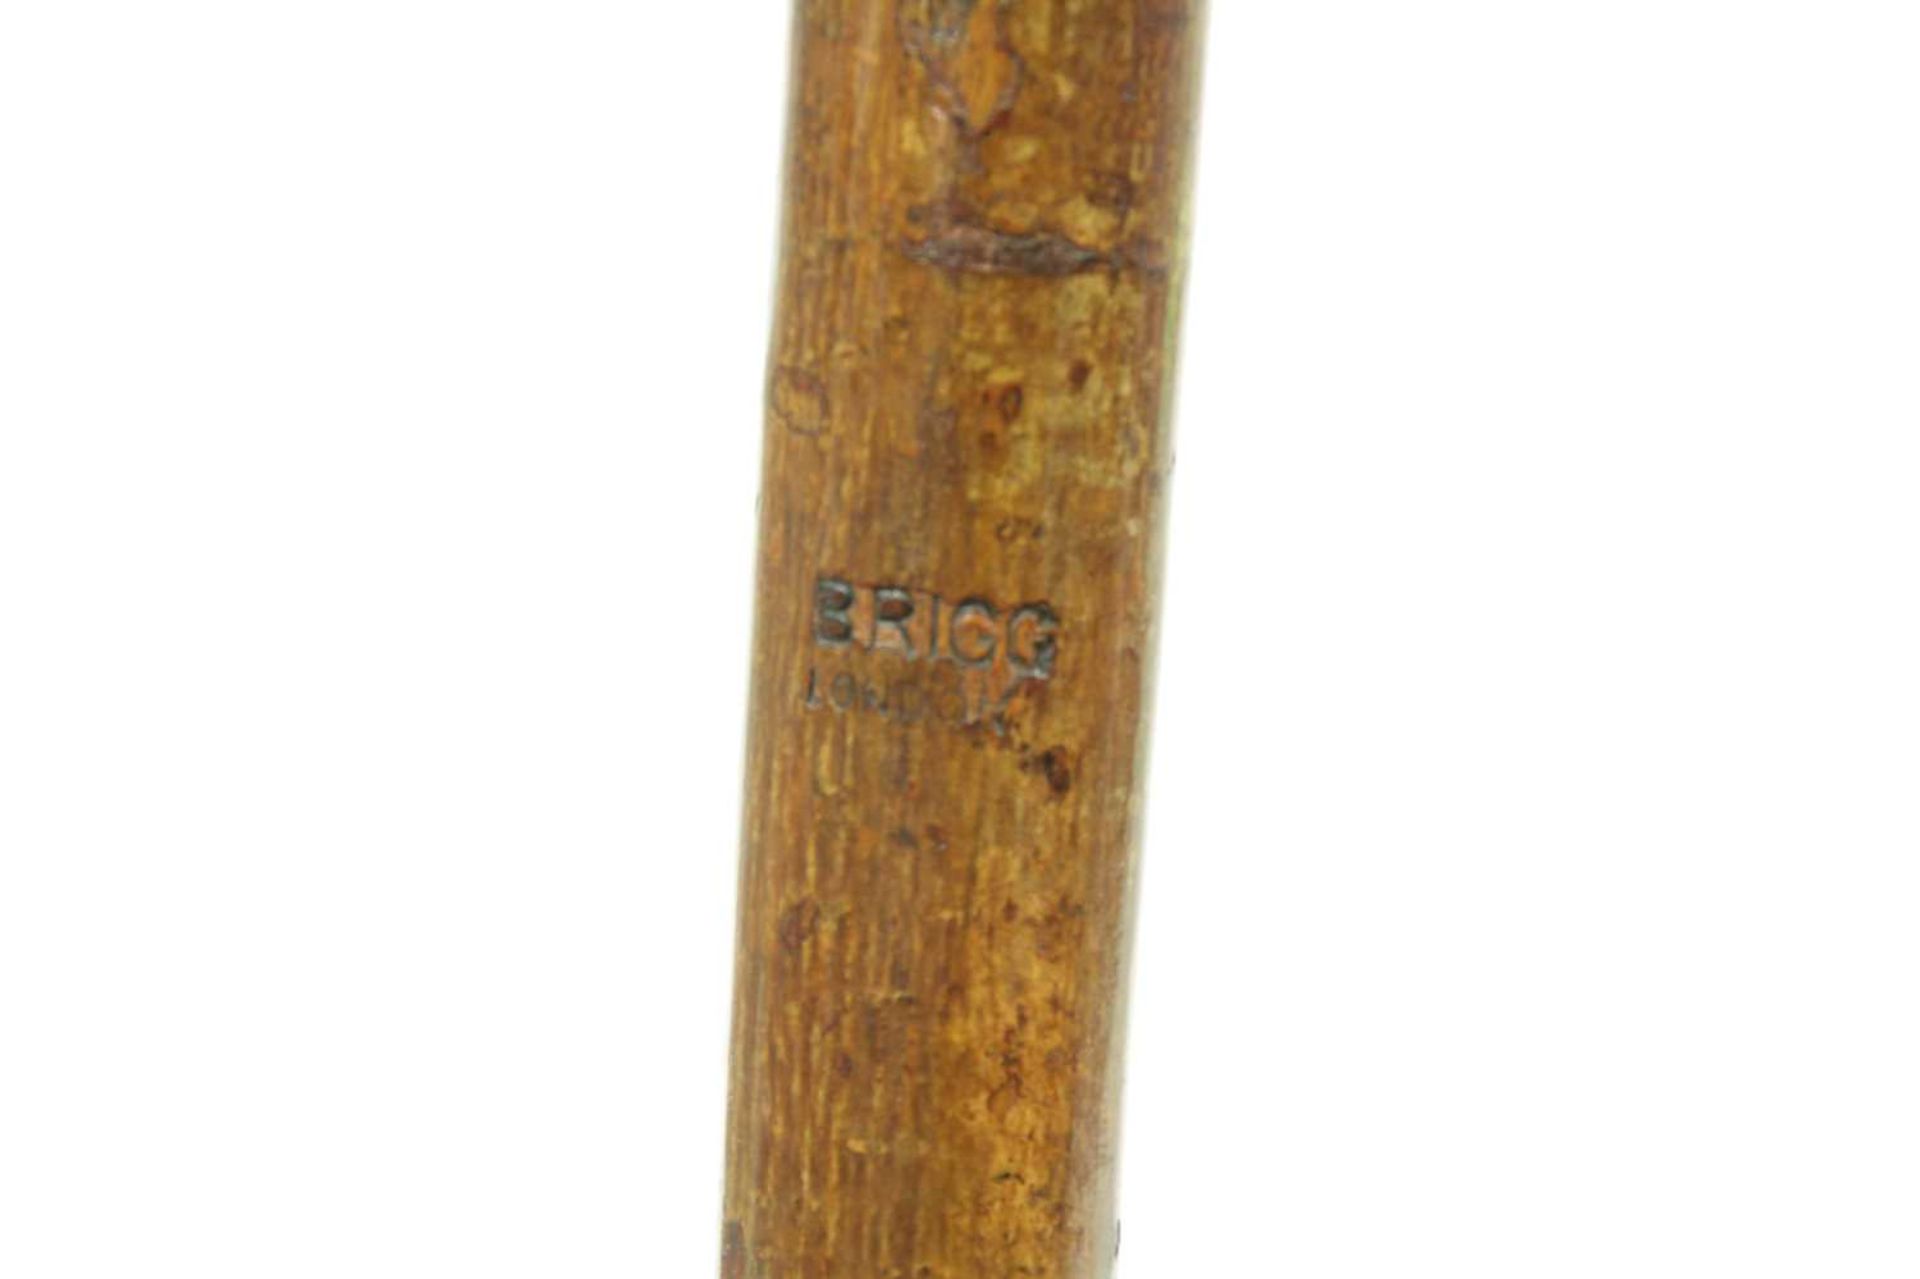 A Brigg carved bloodhound walking stick - Bild 6 aus 6